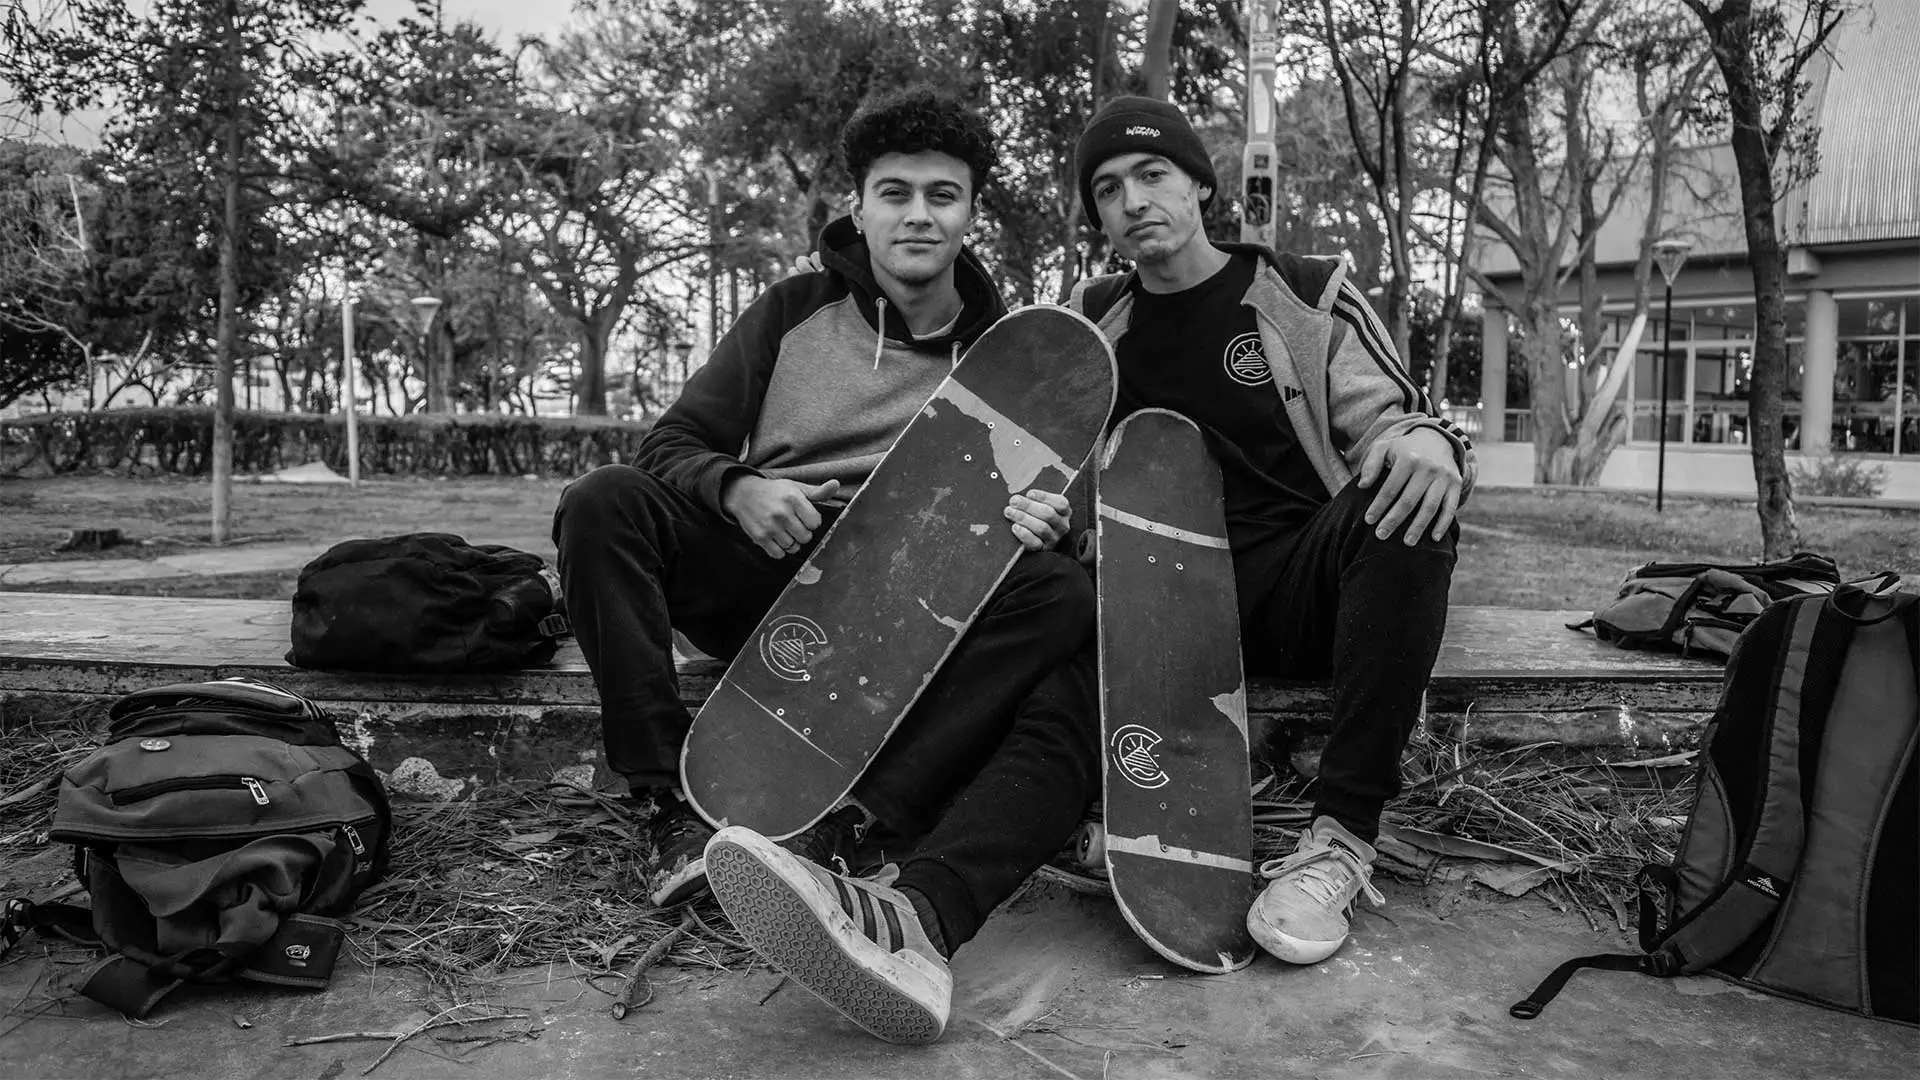 Costa Skate Club: De skaters para skaters